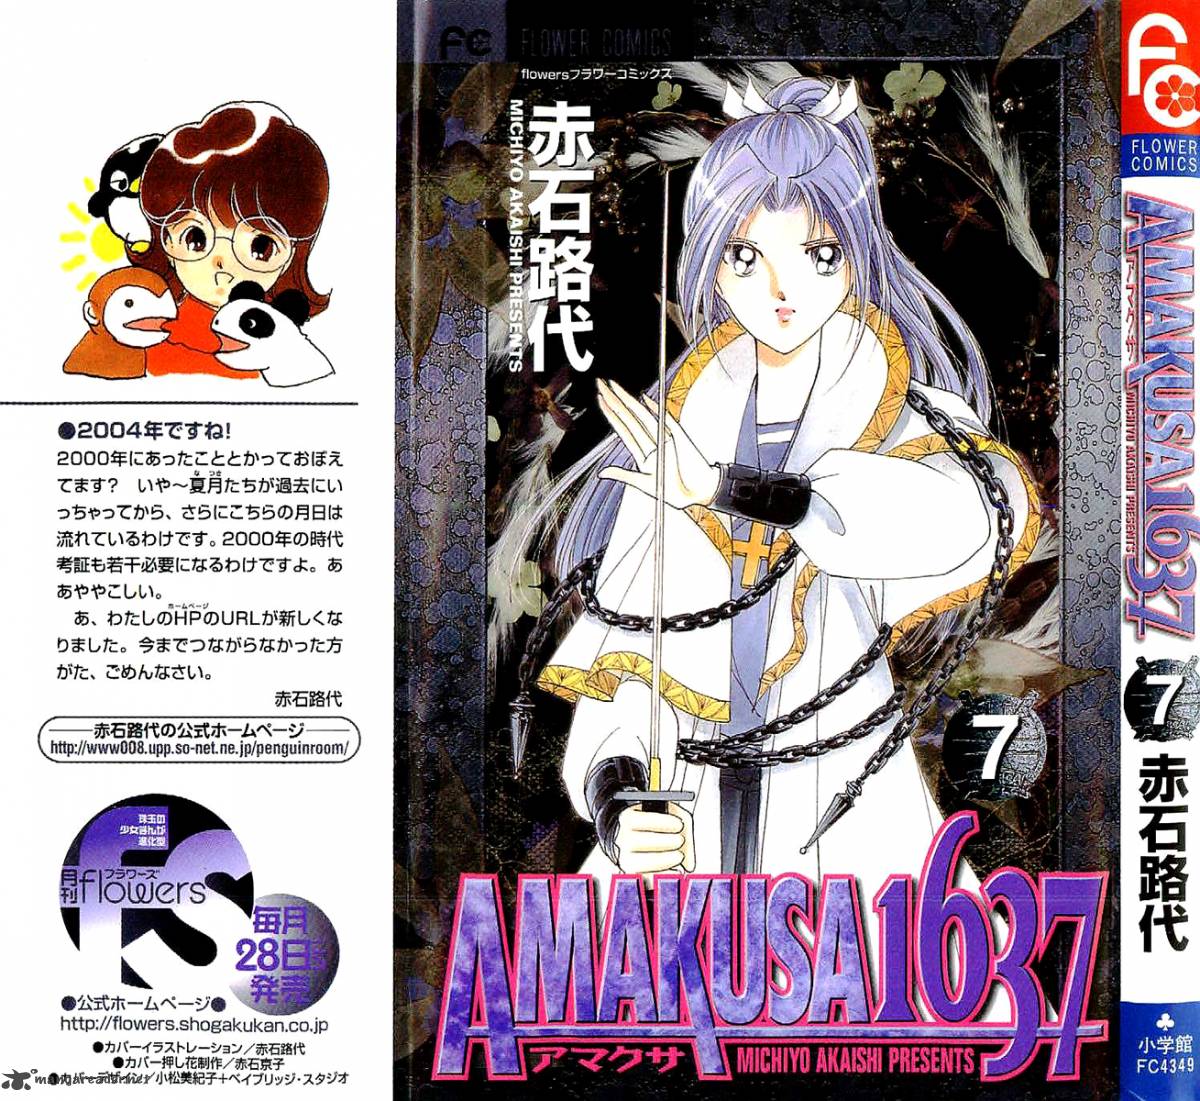 Amakusa 1637 Chapter 28 Page 2